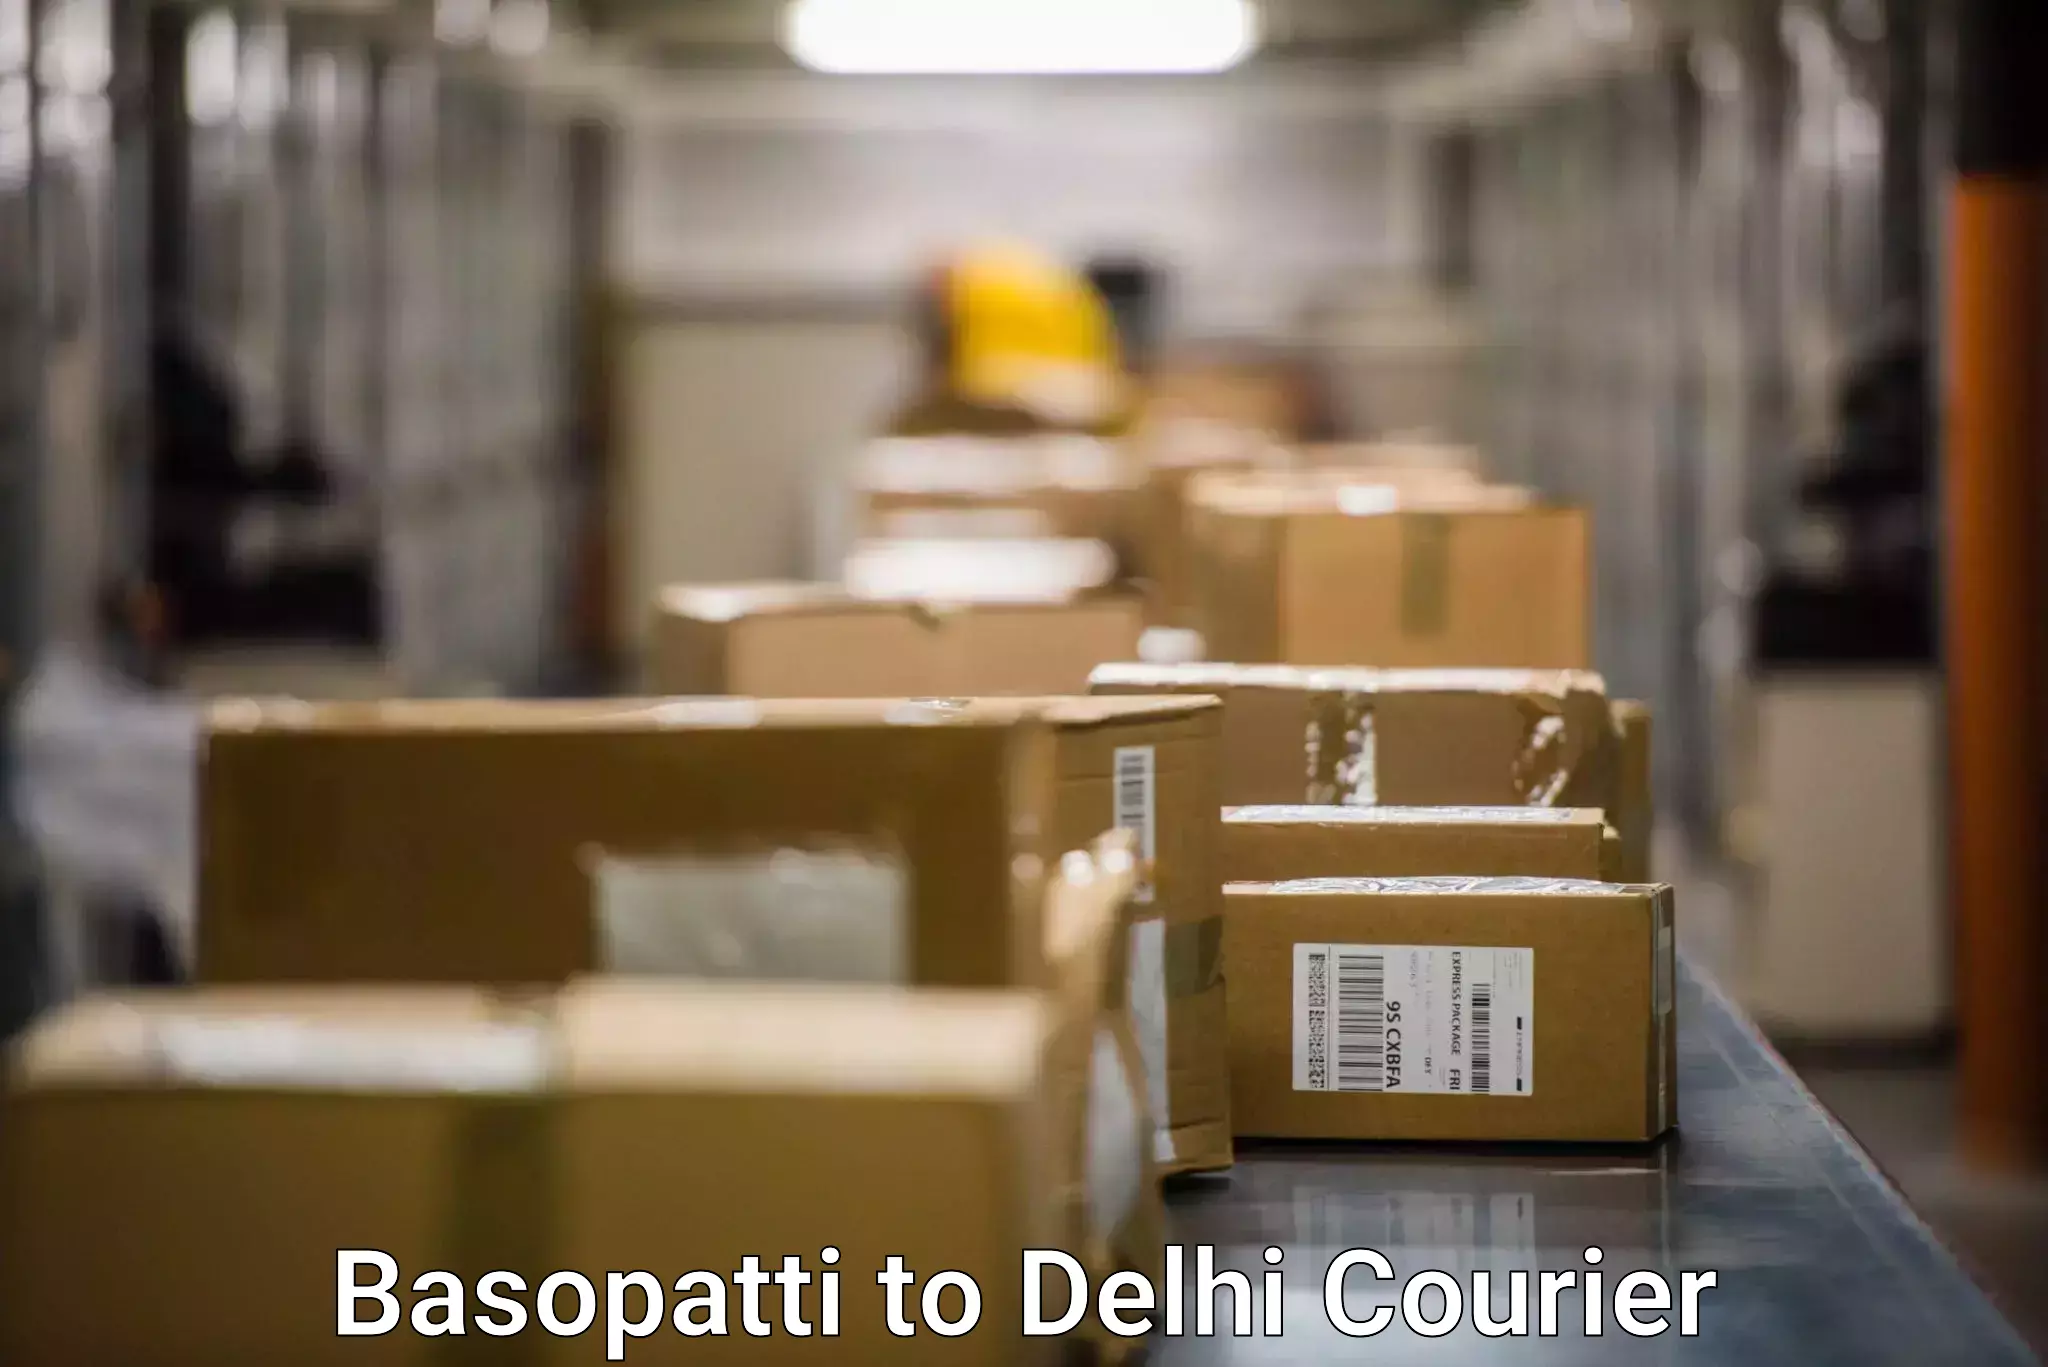 Overnight delivery services Basopatti to University of Delhi